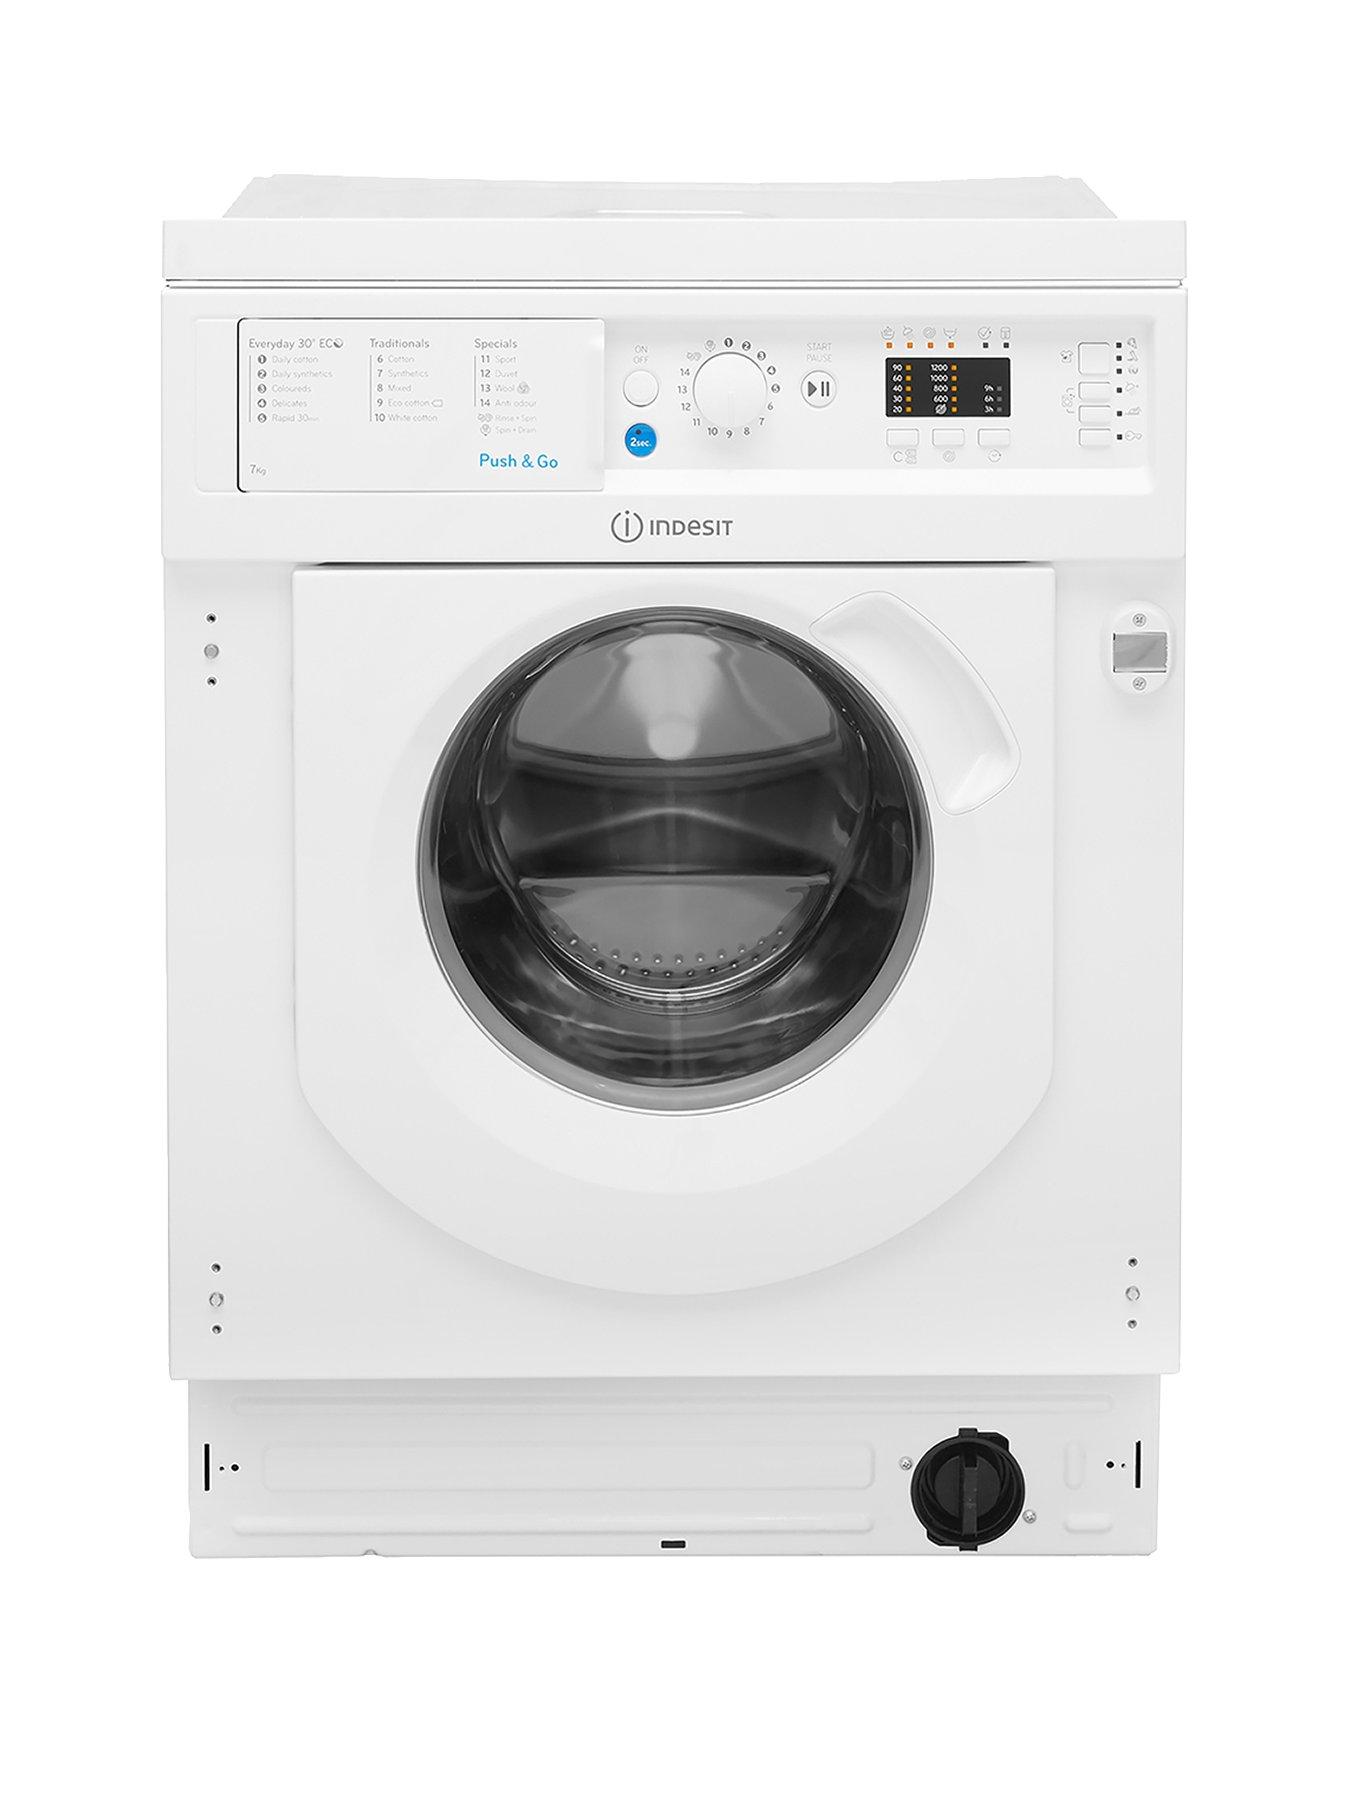 Indesit Biwmil71252 7Kg Load 1200 Spin Washing Machine - White - Washing Machine With Installation